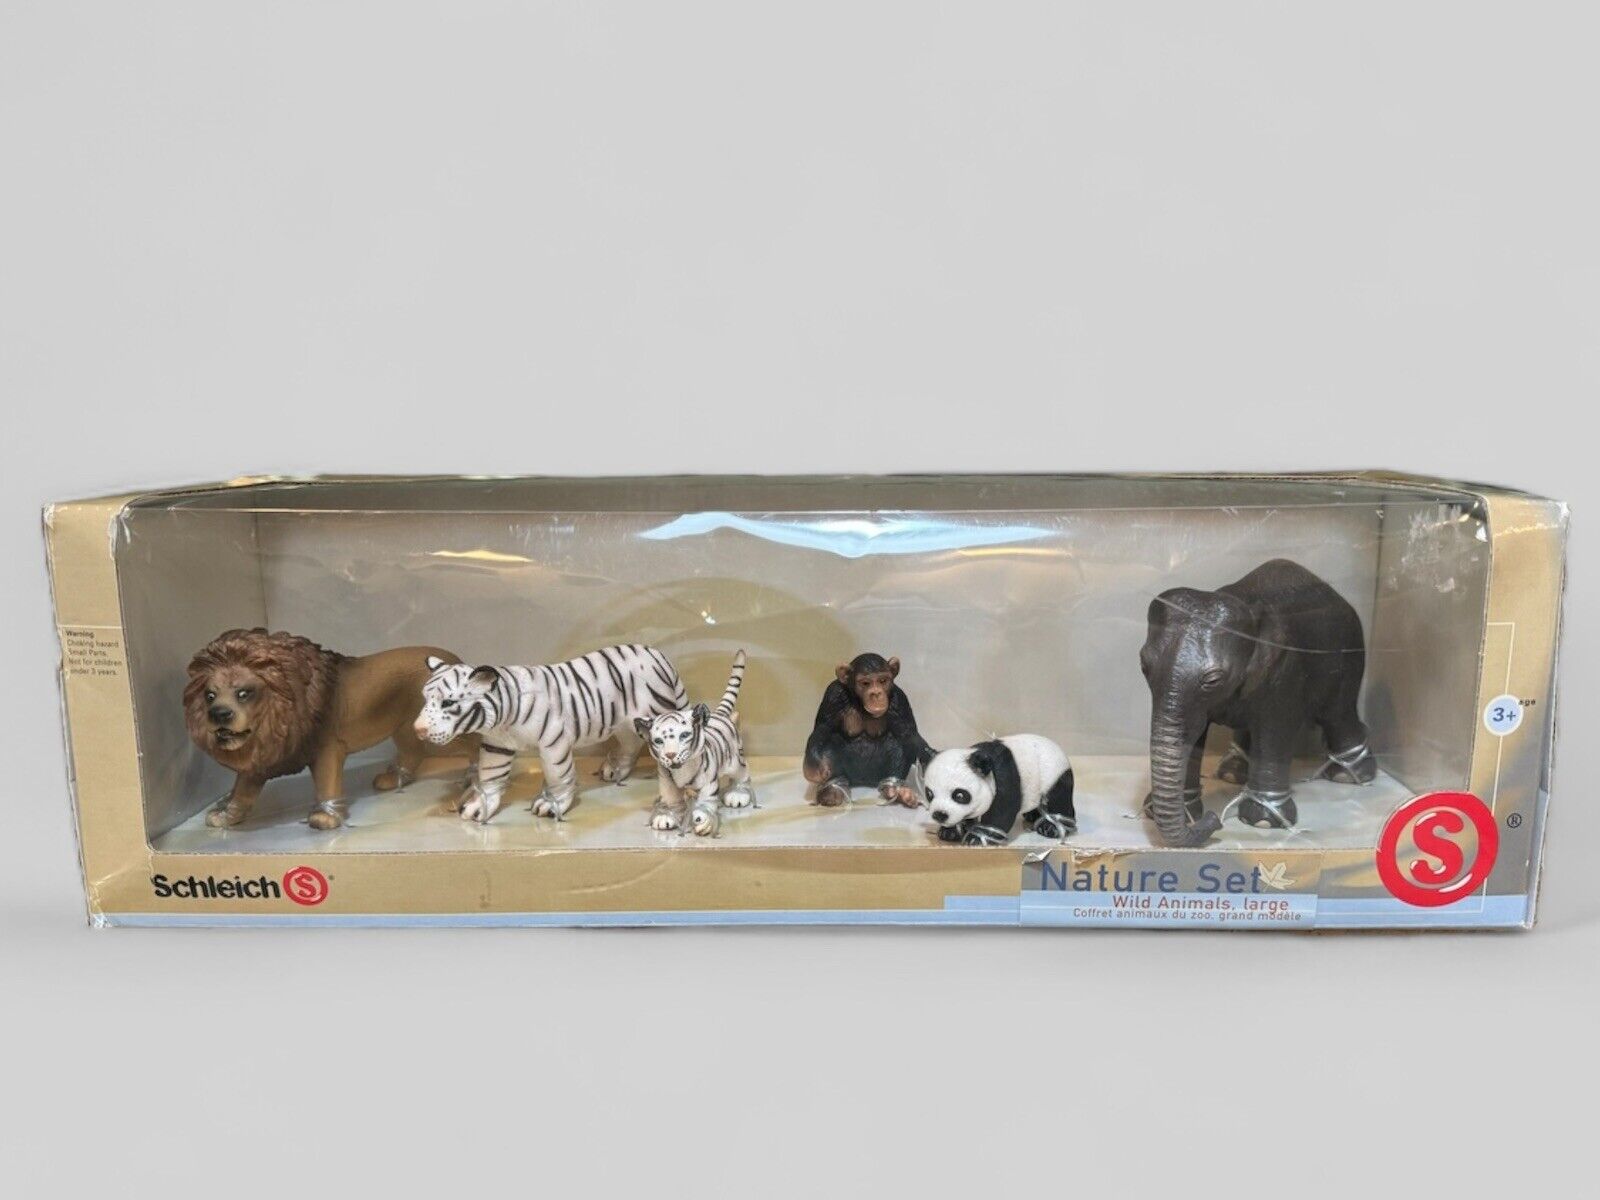 Schleich Nature Set Wild Animals (6) #40946 Hand Painted NEW IN BOX, Retired